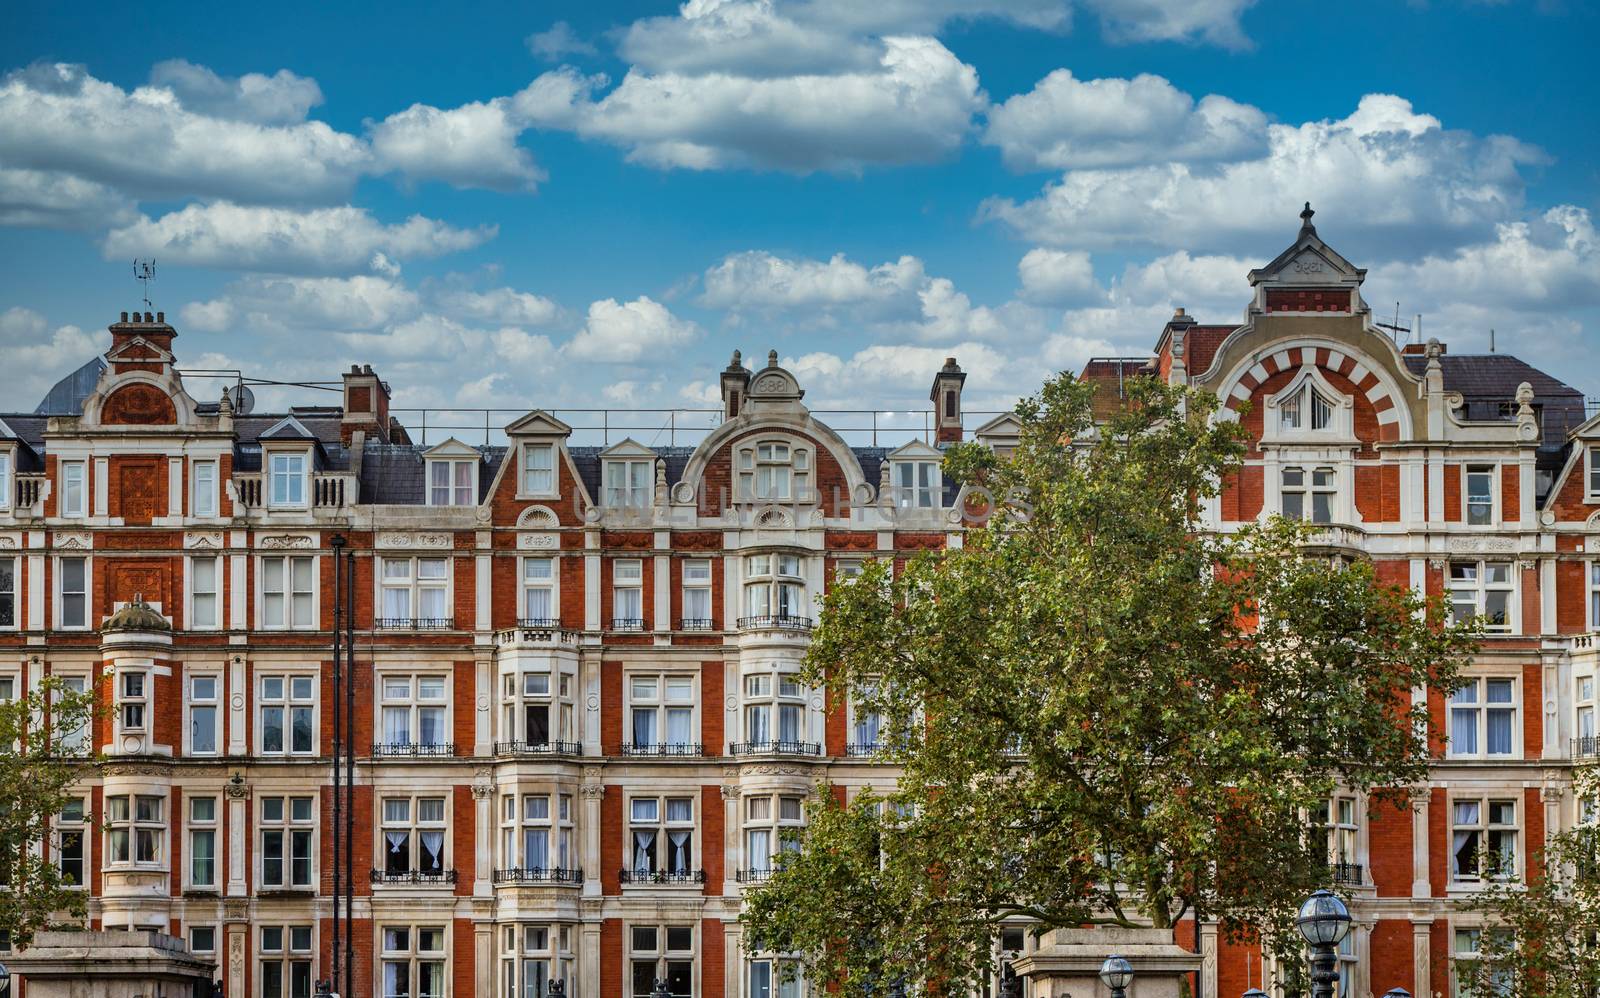 Luxury Flats in London Built in 1889